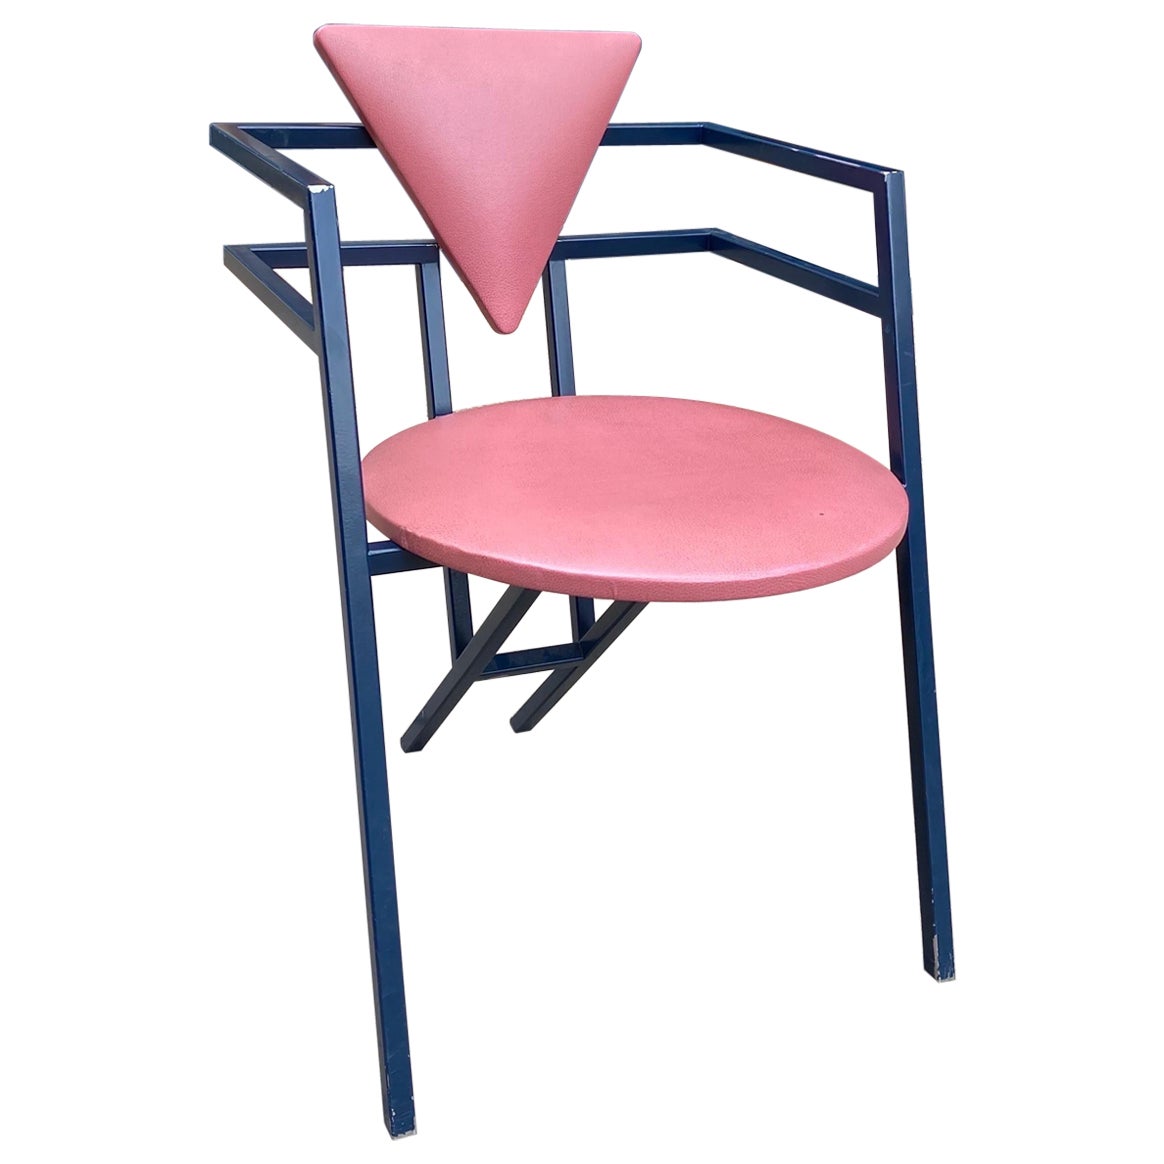 1 Druillet Postmodern 1980s Blue Pink Dining Chair Jean Allemand Vintage Desk For Sale